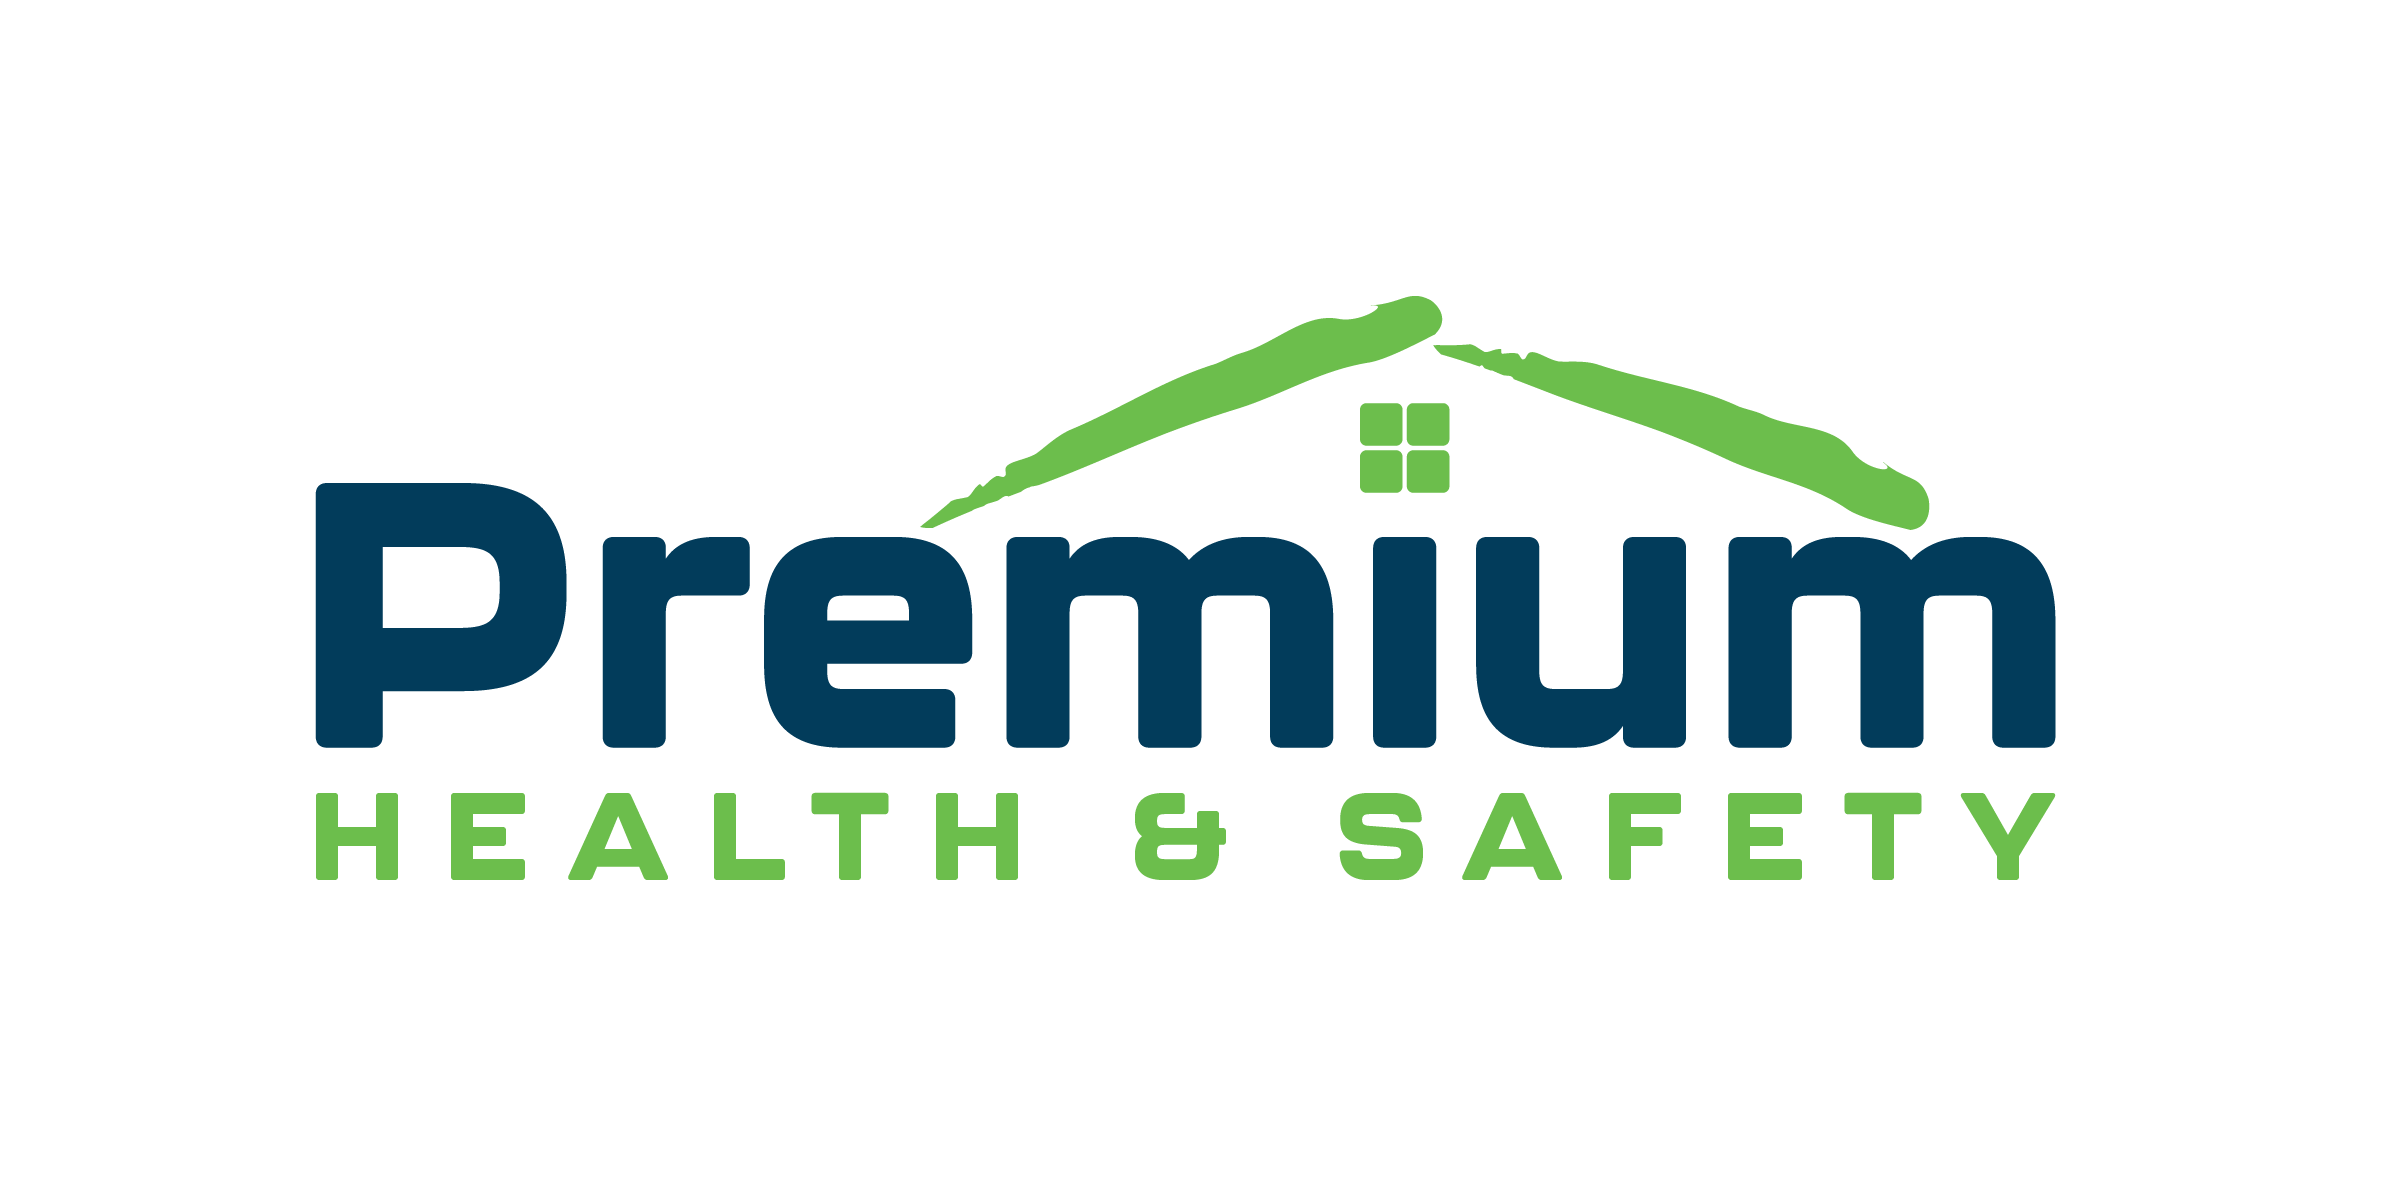 Premium Health & Safety